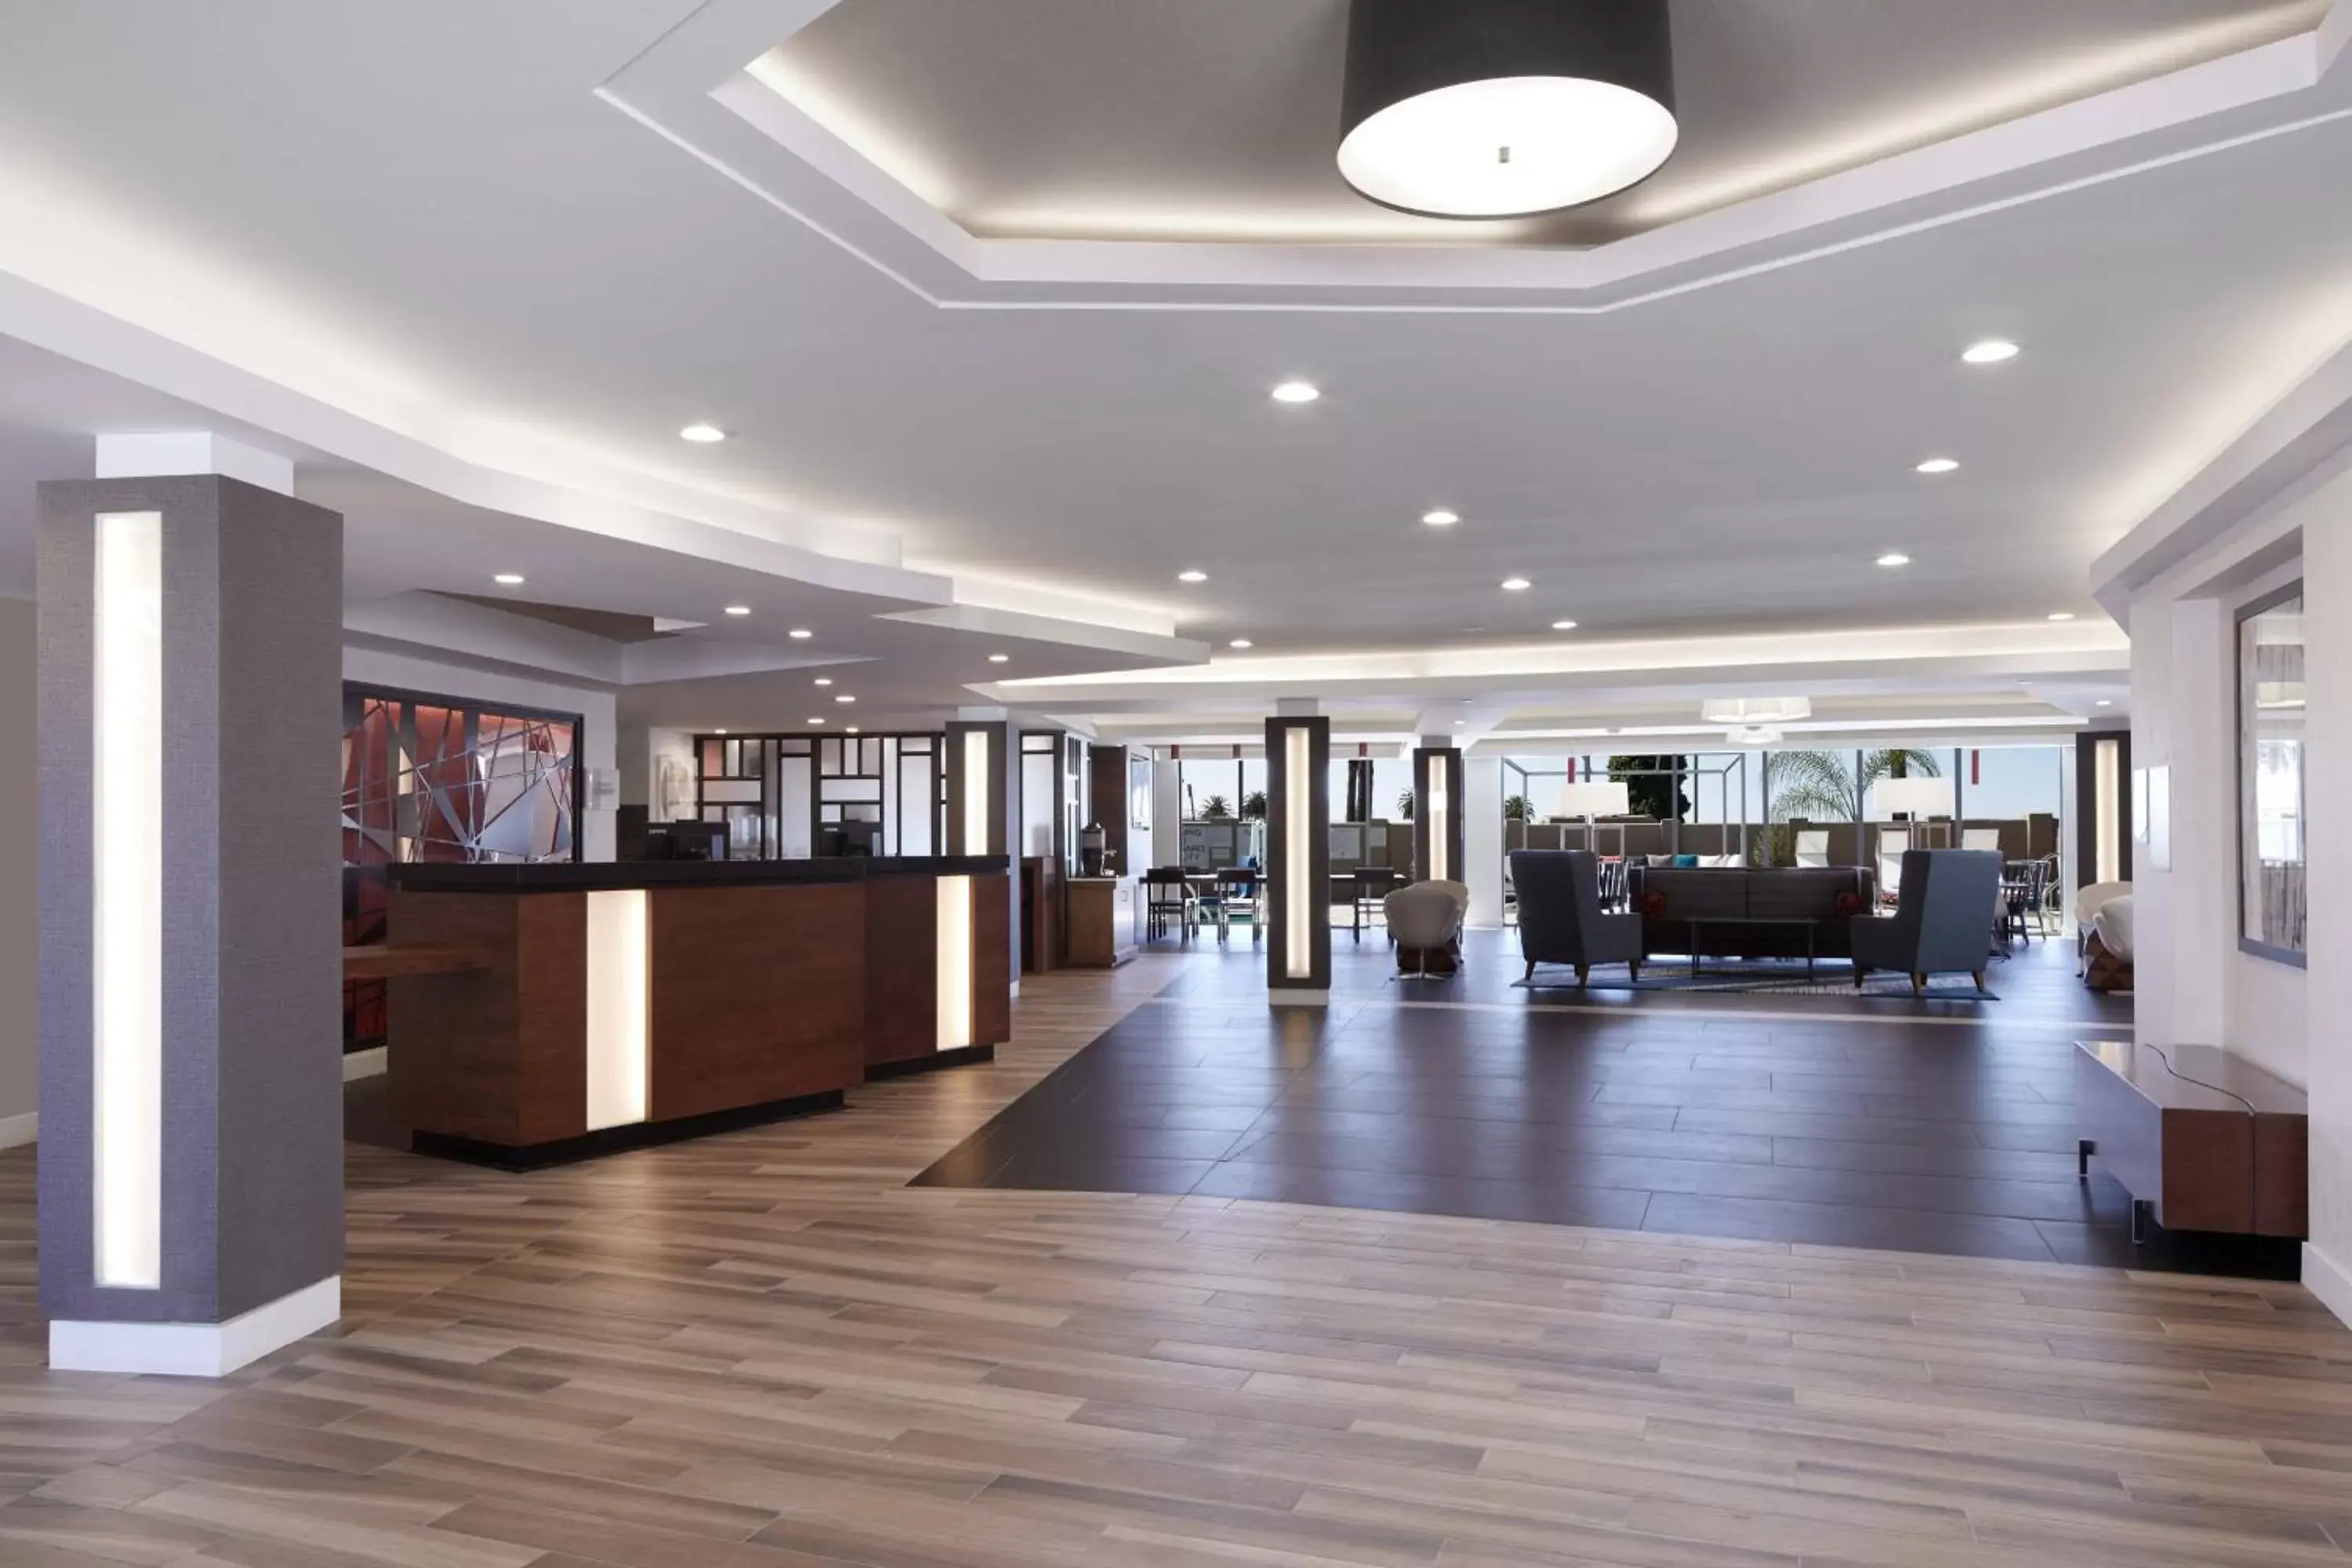 Lobby or reception in Fairfield Inn & Suites By Marriott Camarillo